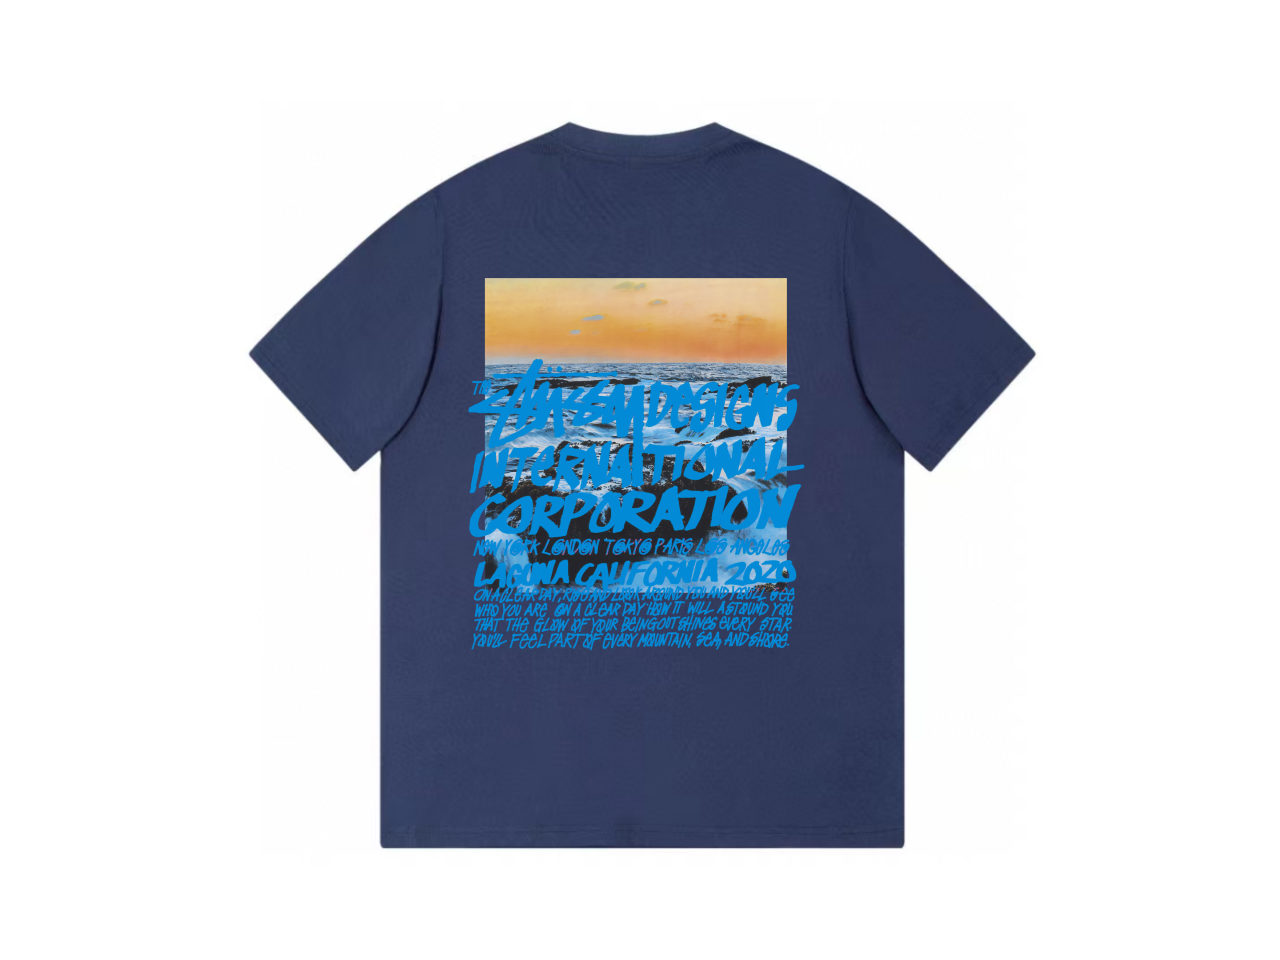 ステューシーのtシャツ偽物 シンプル 純綿 限定品 半袖 海の写真プリント ファッション ブルー_2